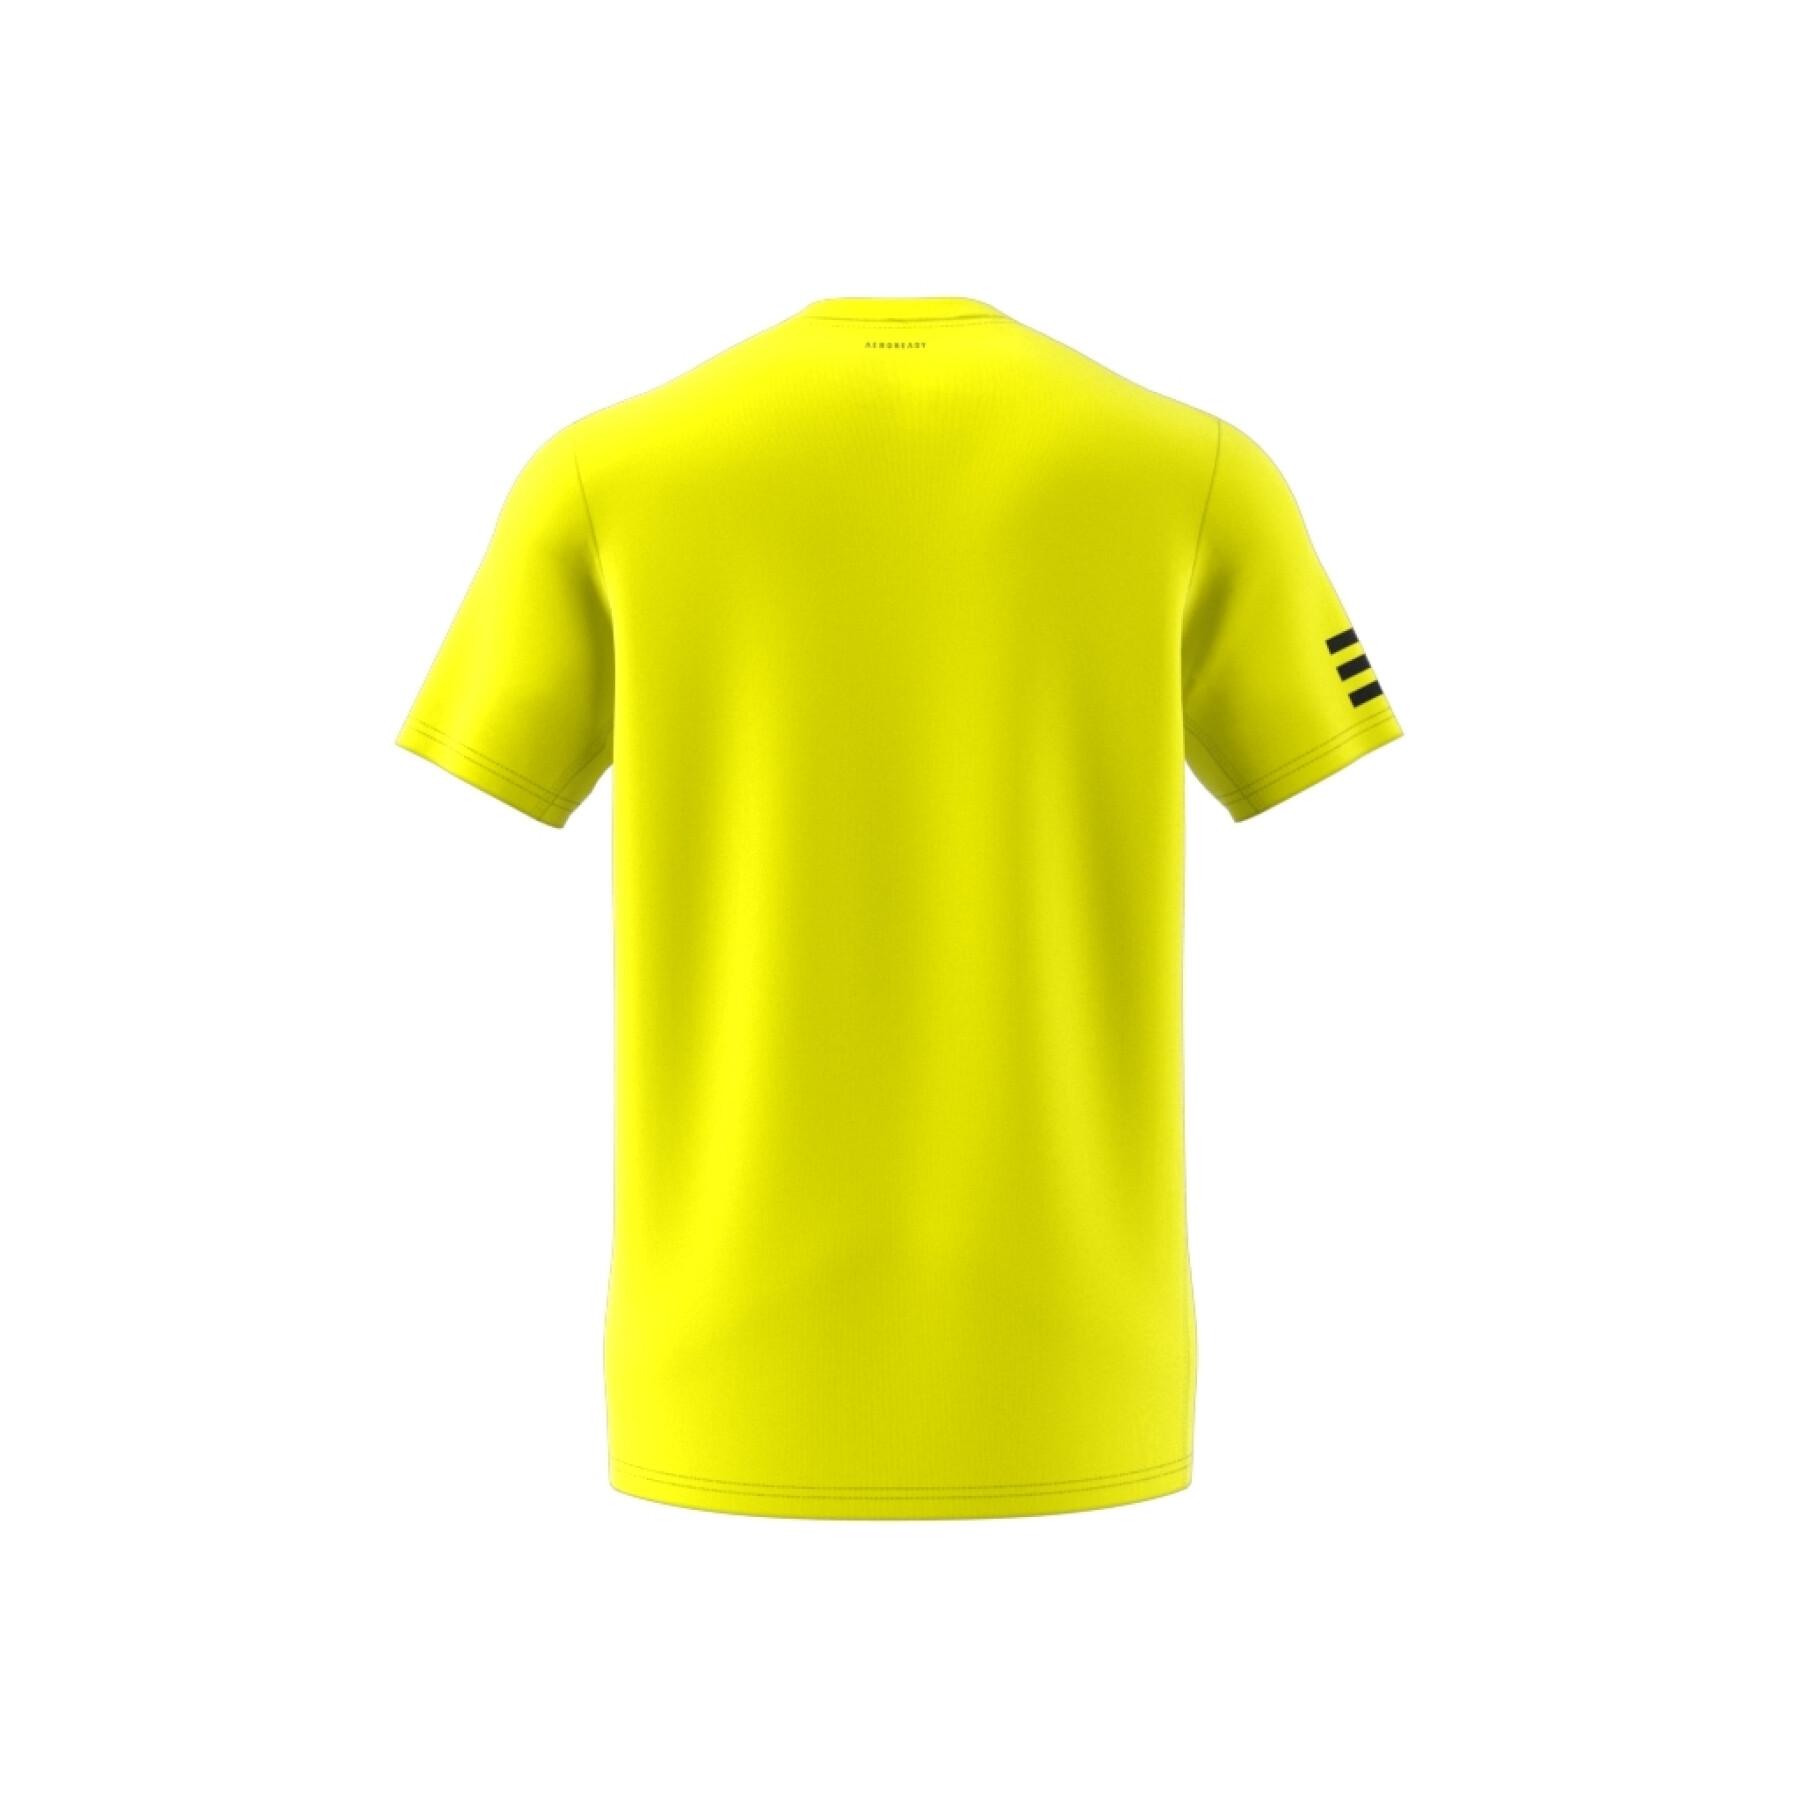 Koszulka klubu tenisowego z 3 paskami adidas